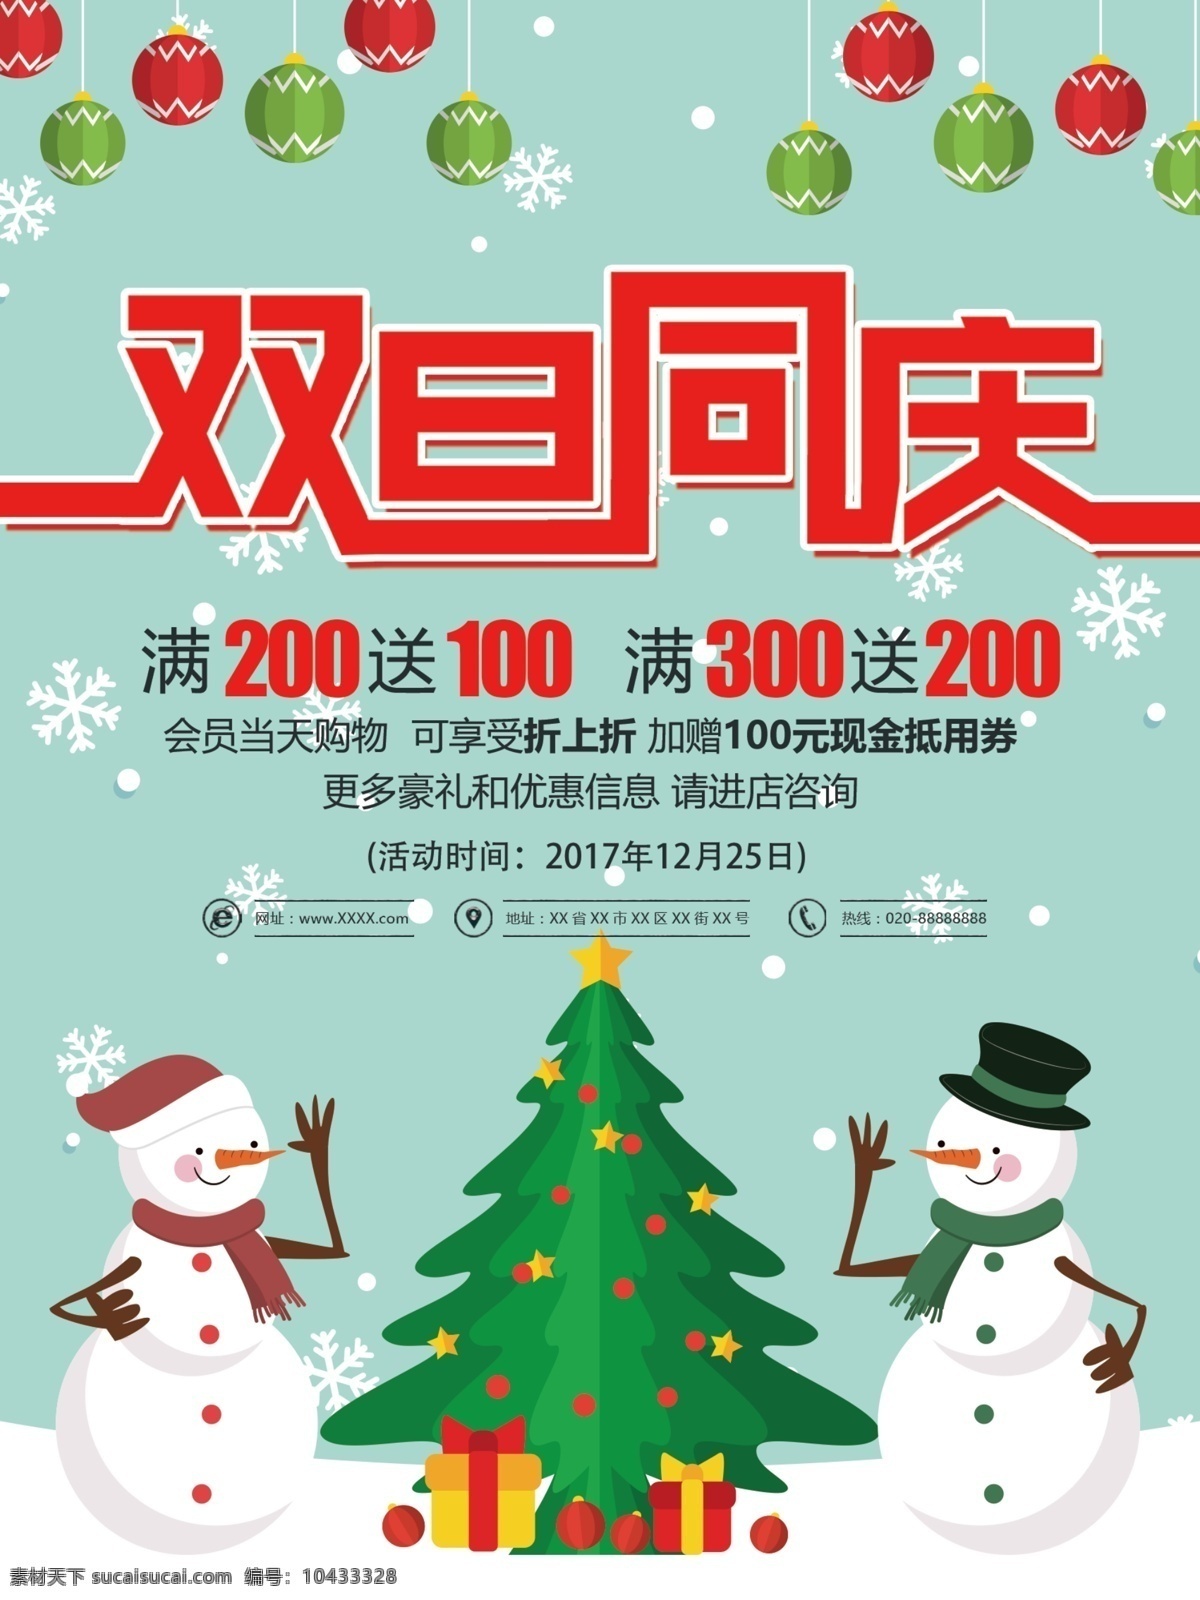 蓝色 卡通 双 旦 同庆 促销 海报 礼物 圣诞树 双旦同庆 雪人